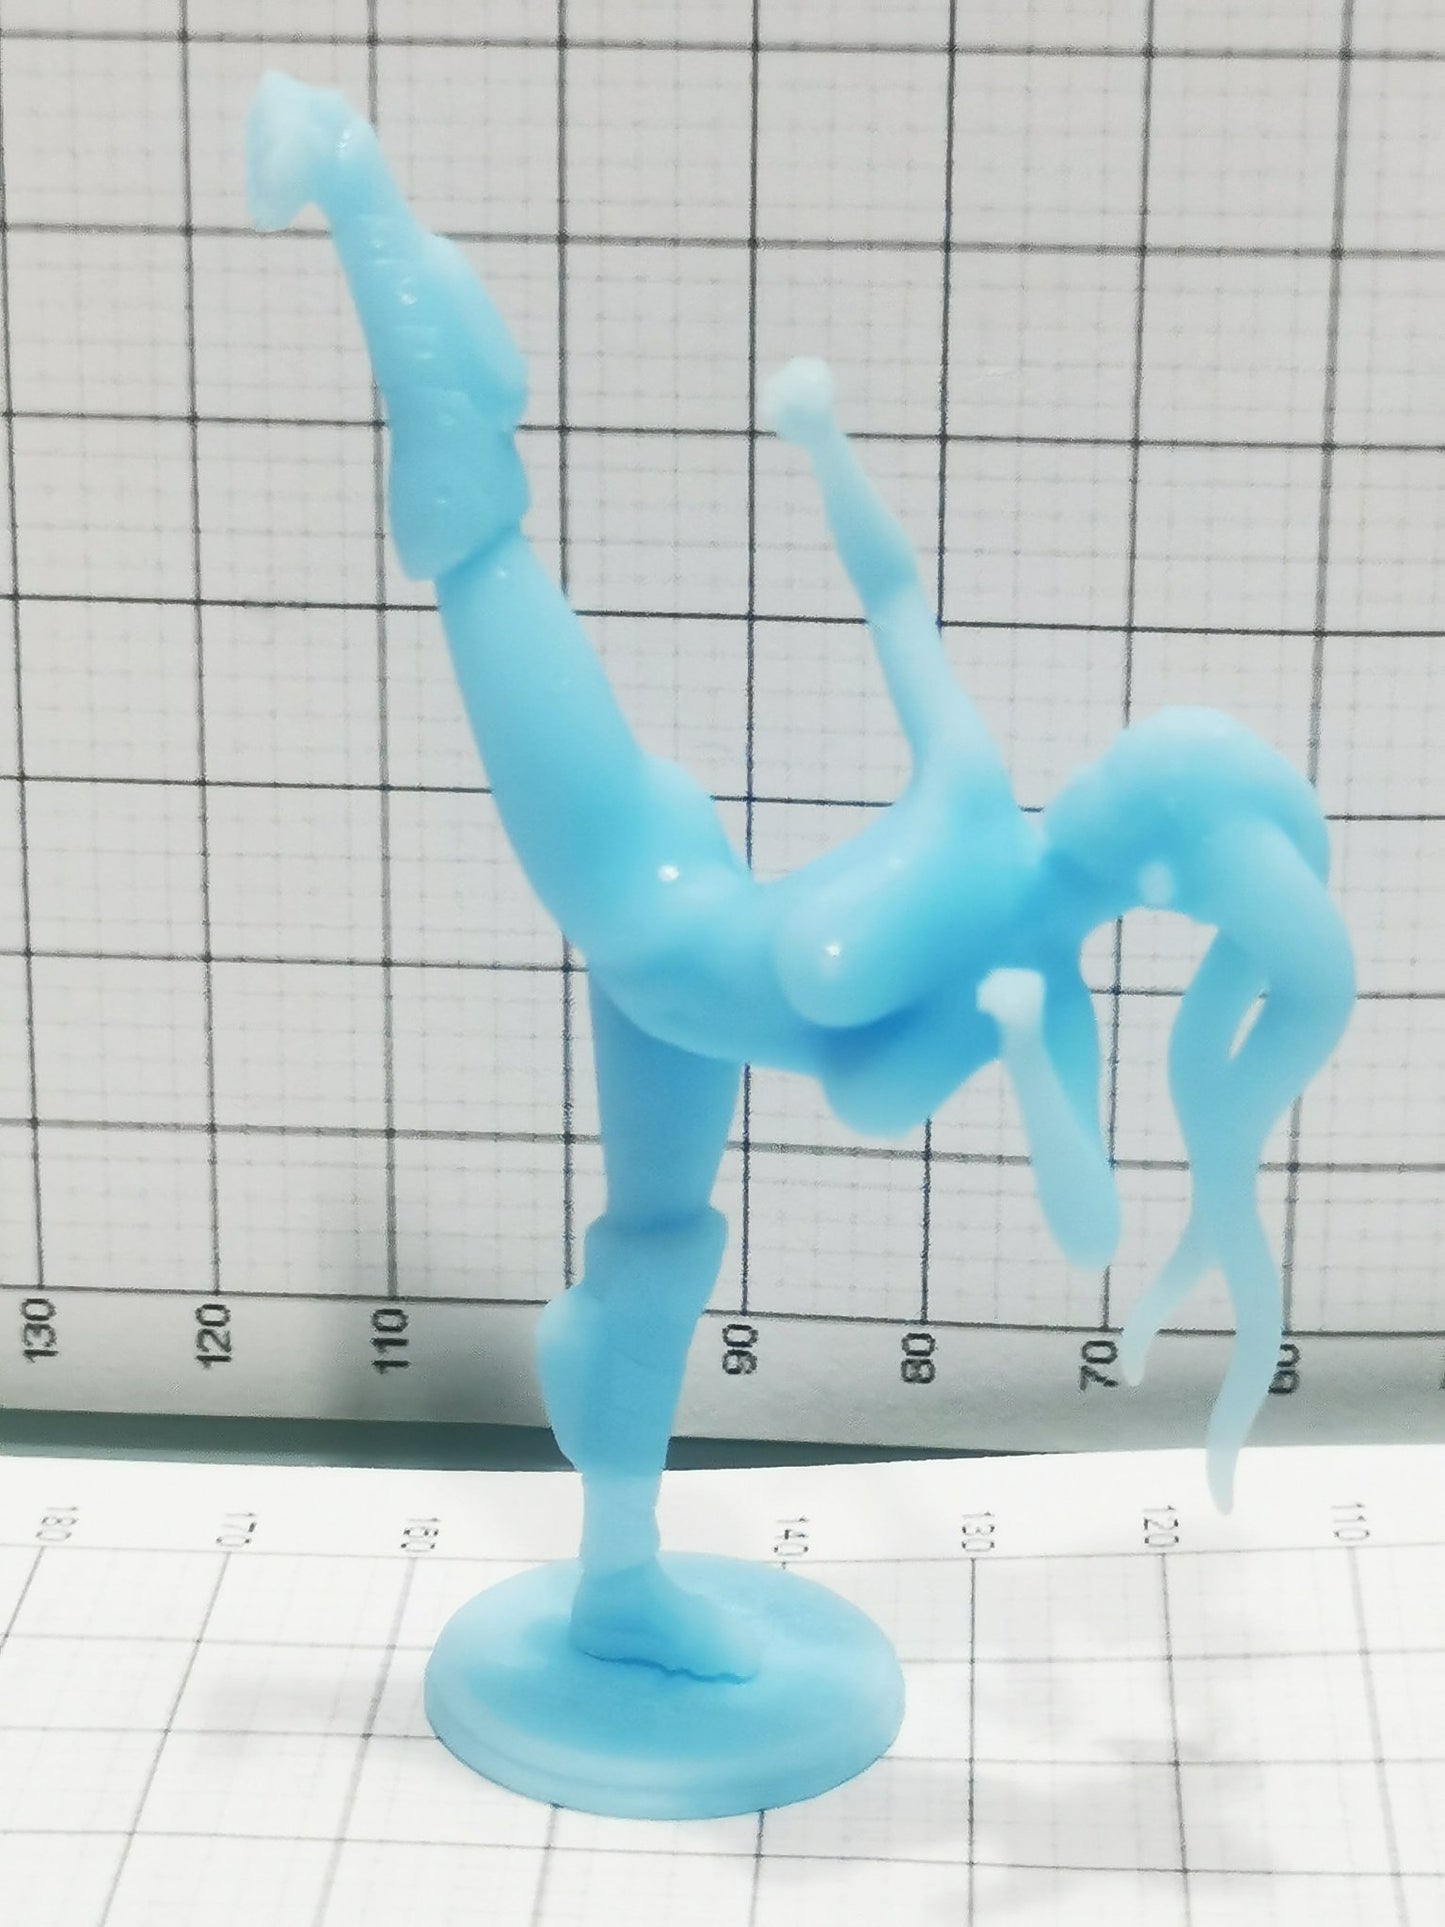 Twi'lek Star Wars | 3D Printed figure Fanart , Unpainted , Custom Figure , Nude Figurine , Custom Miniature , Bondage figure , Naked Waifu , NSFW Figurine , Anime Figure